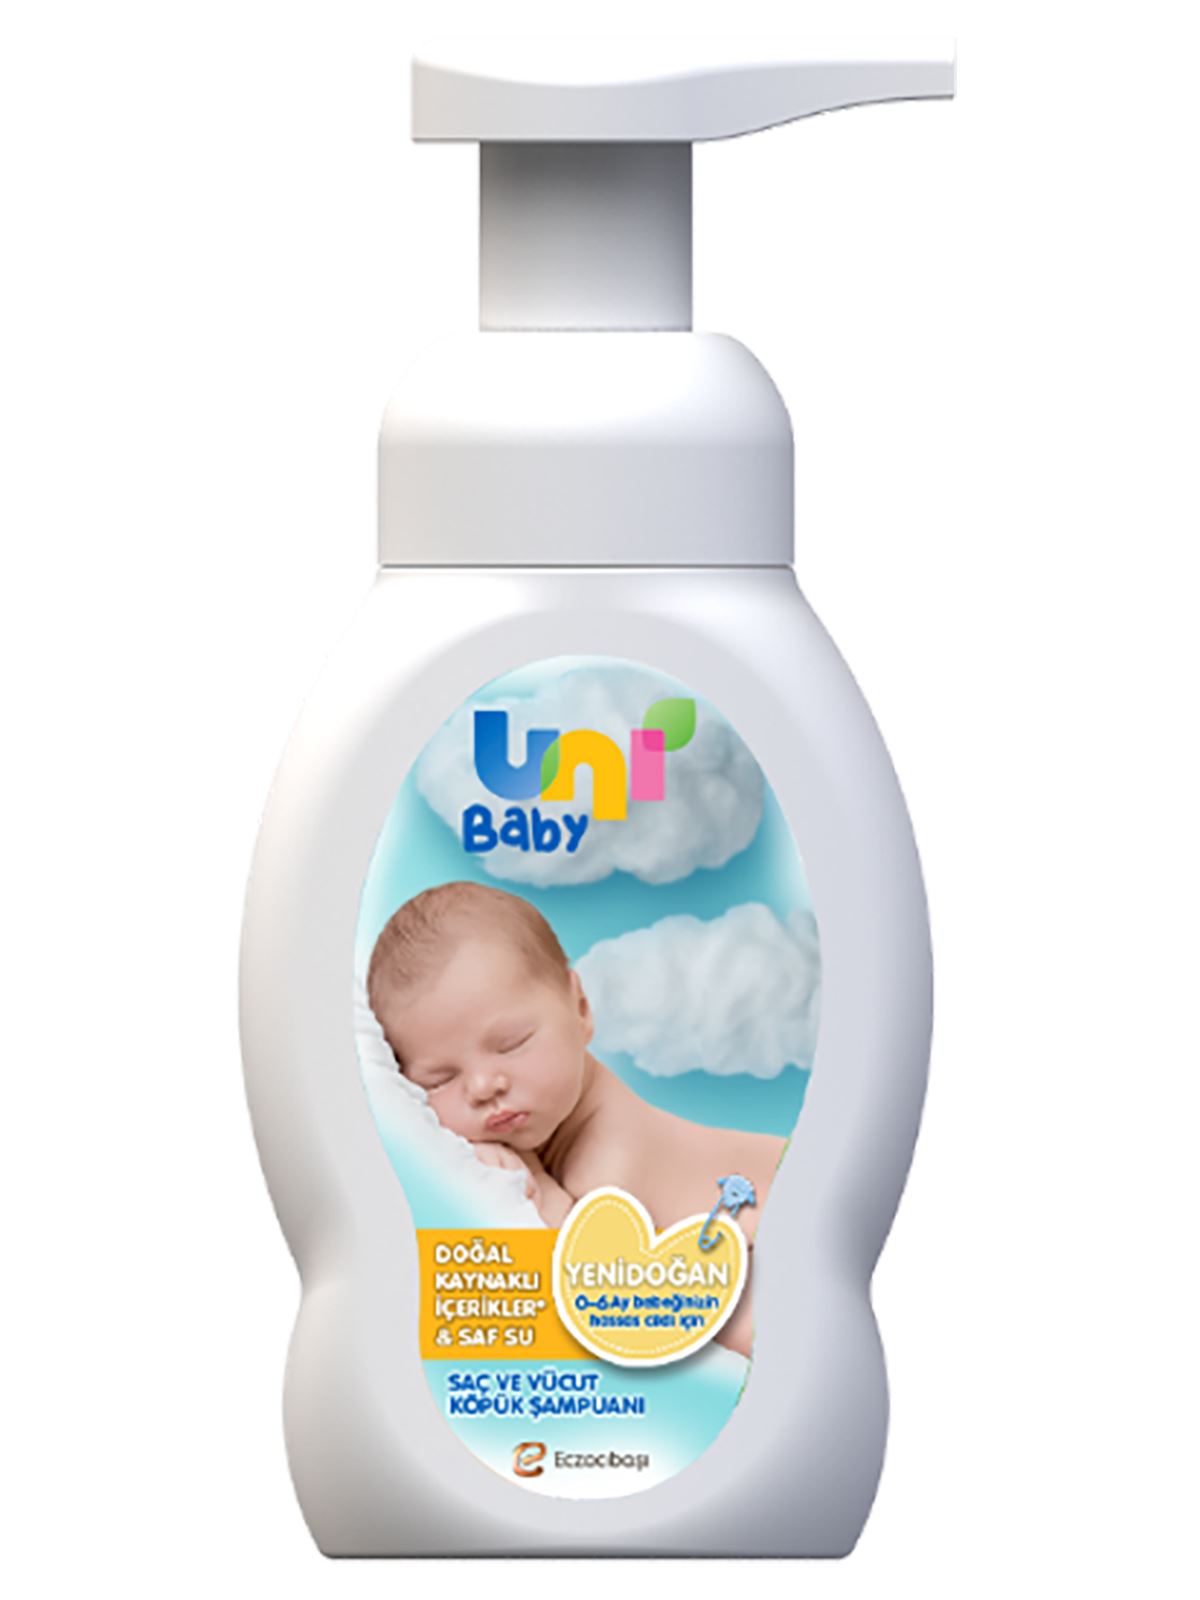  Uni Baby Yenidoğan Köpük Şampuan 200 ml 0-6 AY